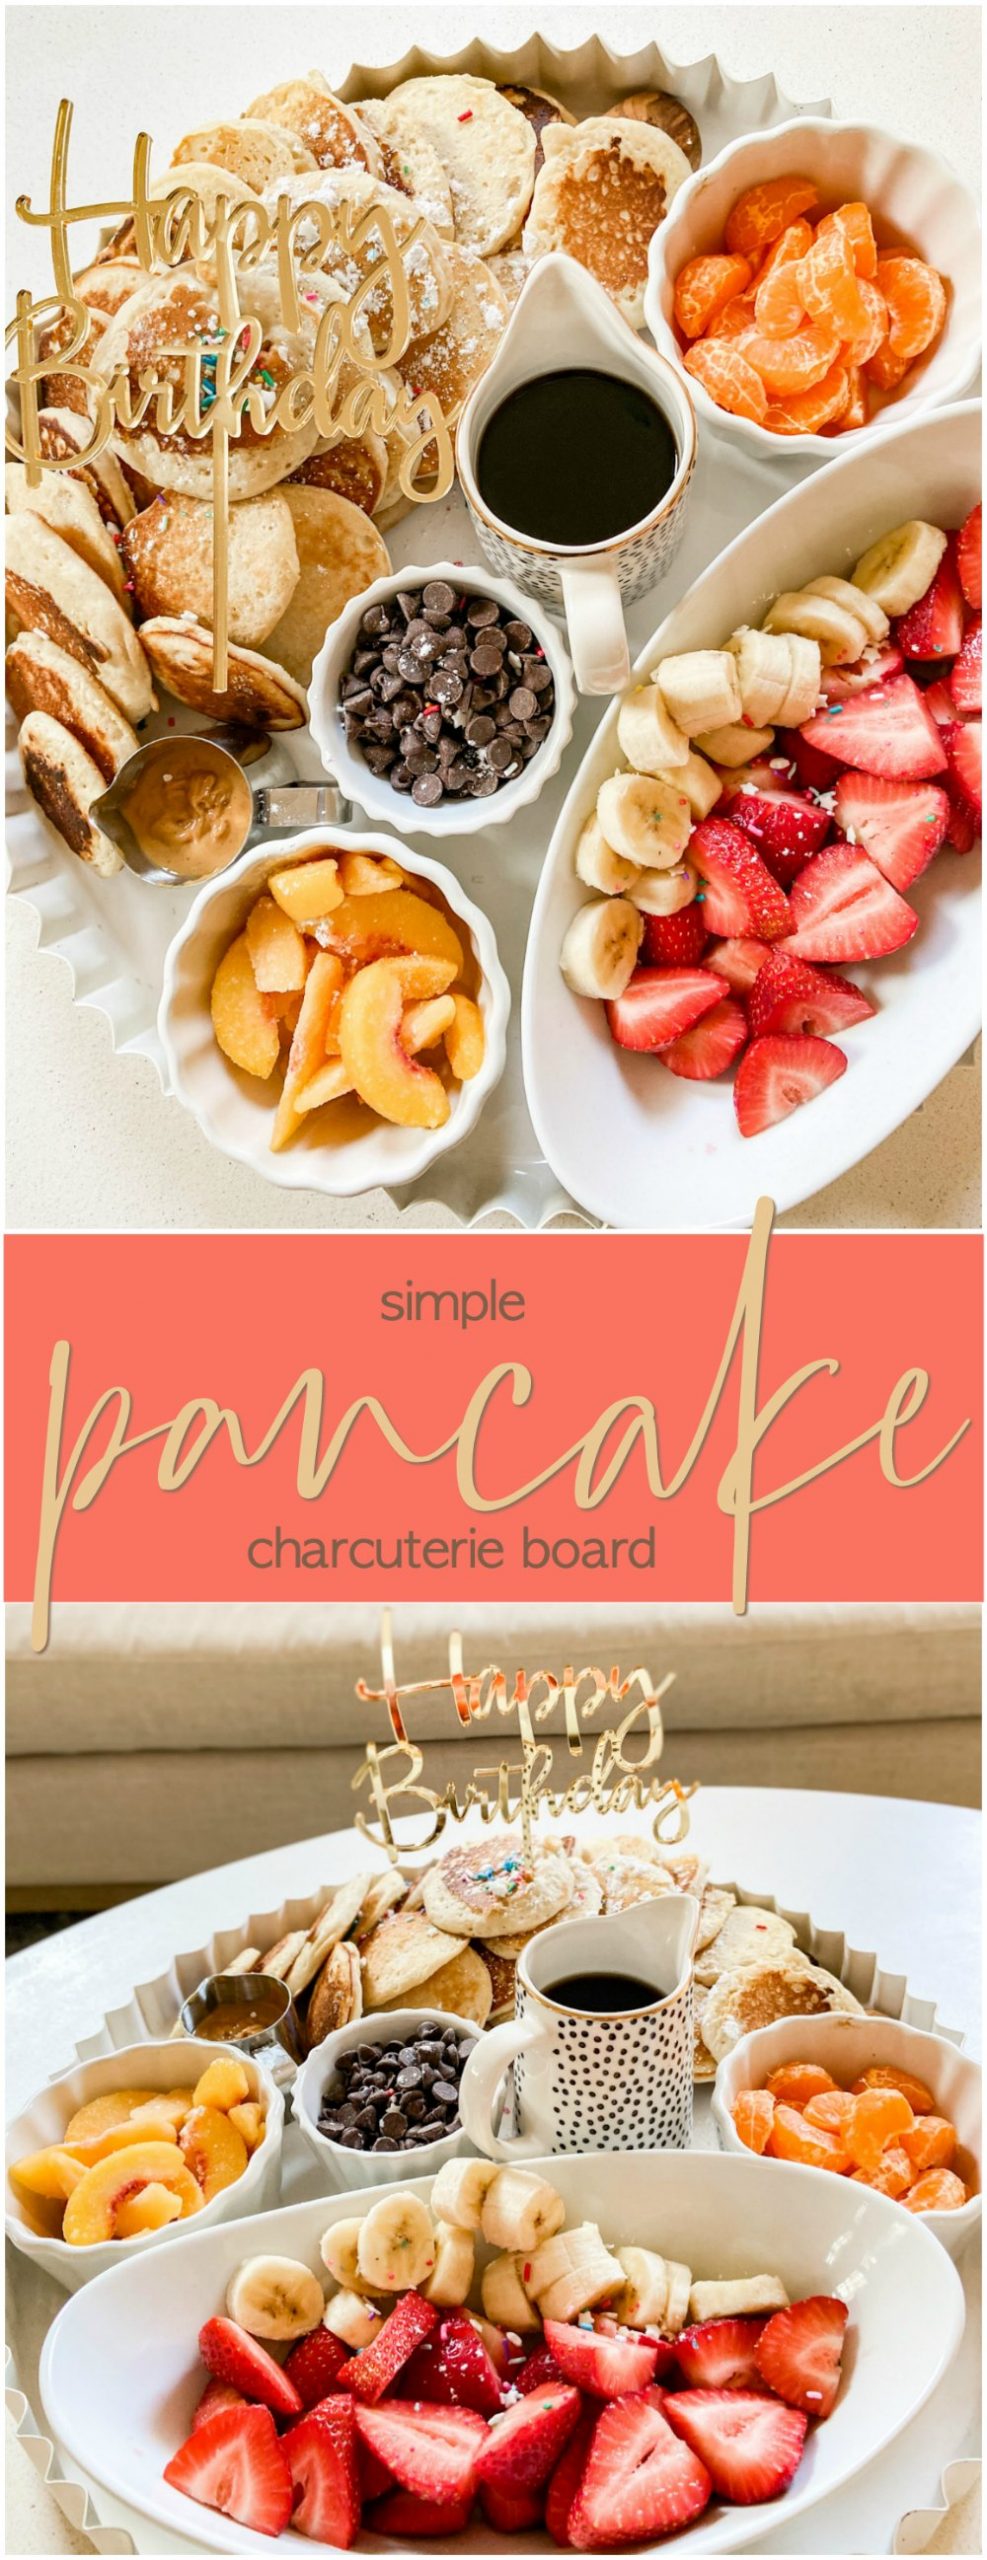 Pancake Charcuterie Breakfast Board